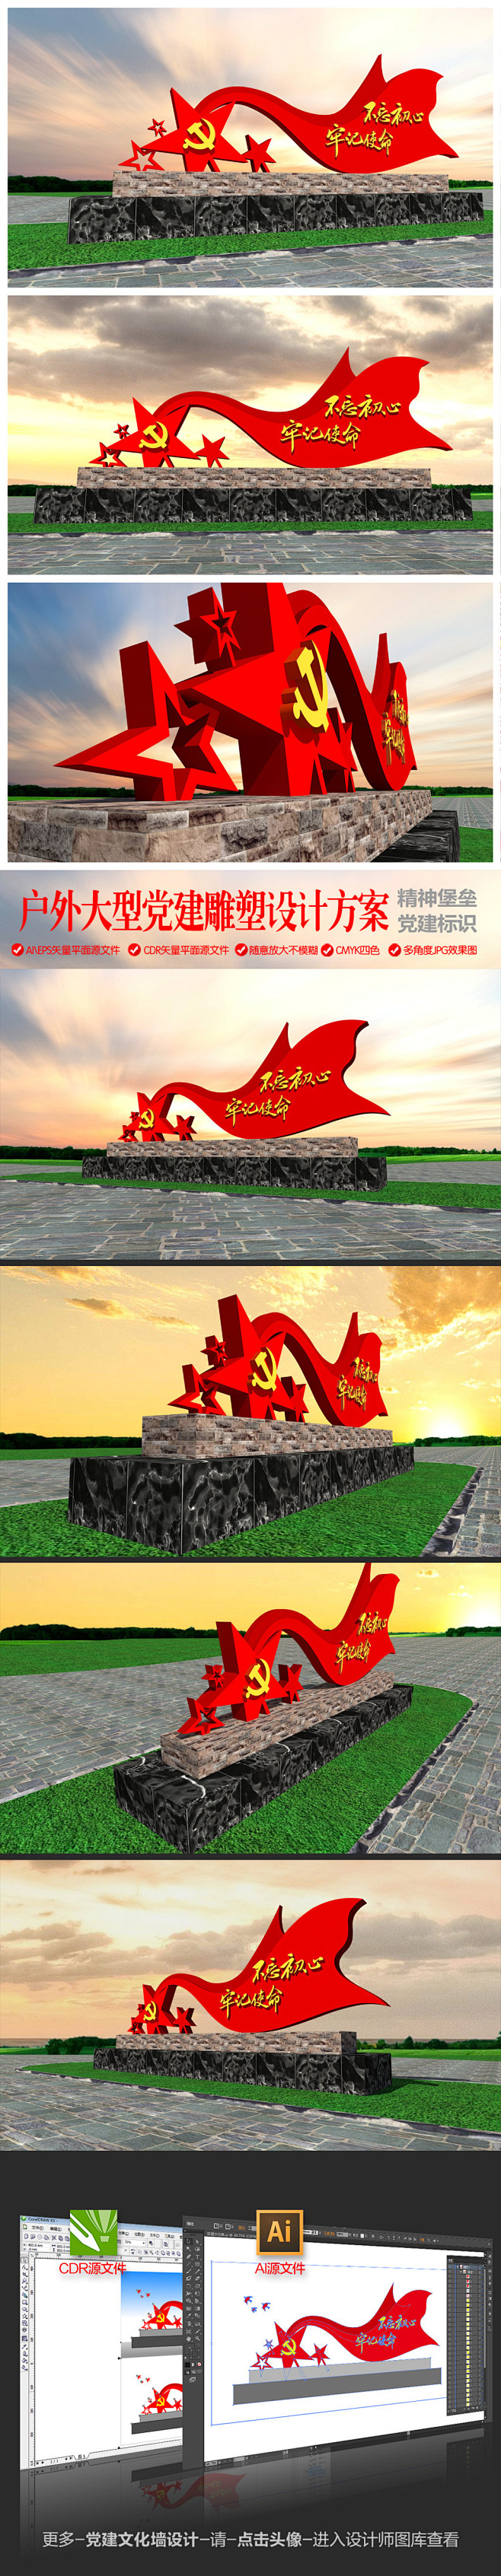 大型广场抽象党建主题雕塑精神堡垒红色记忆